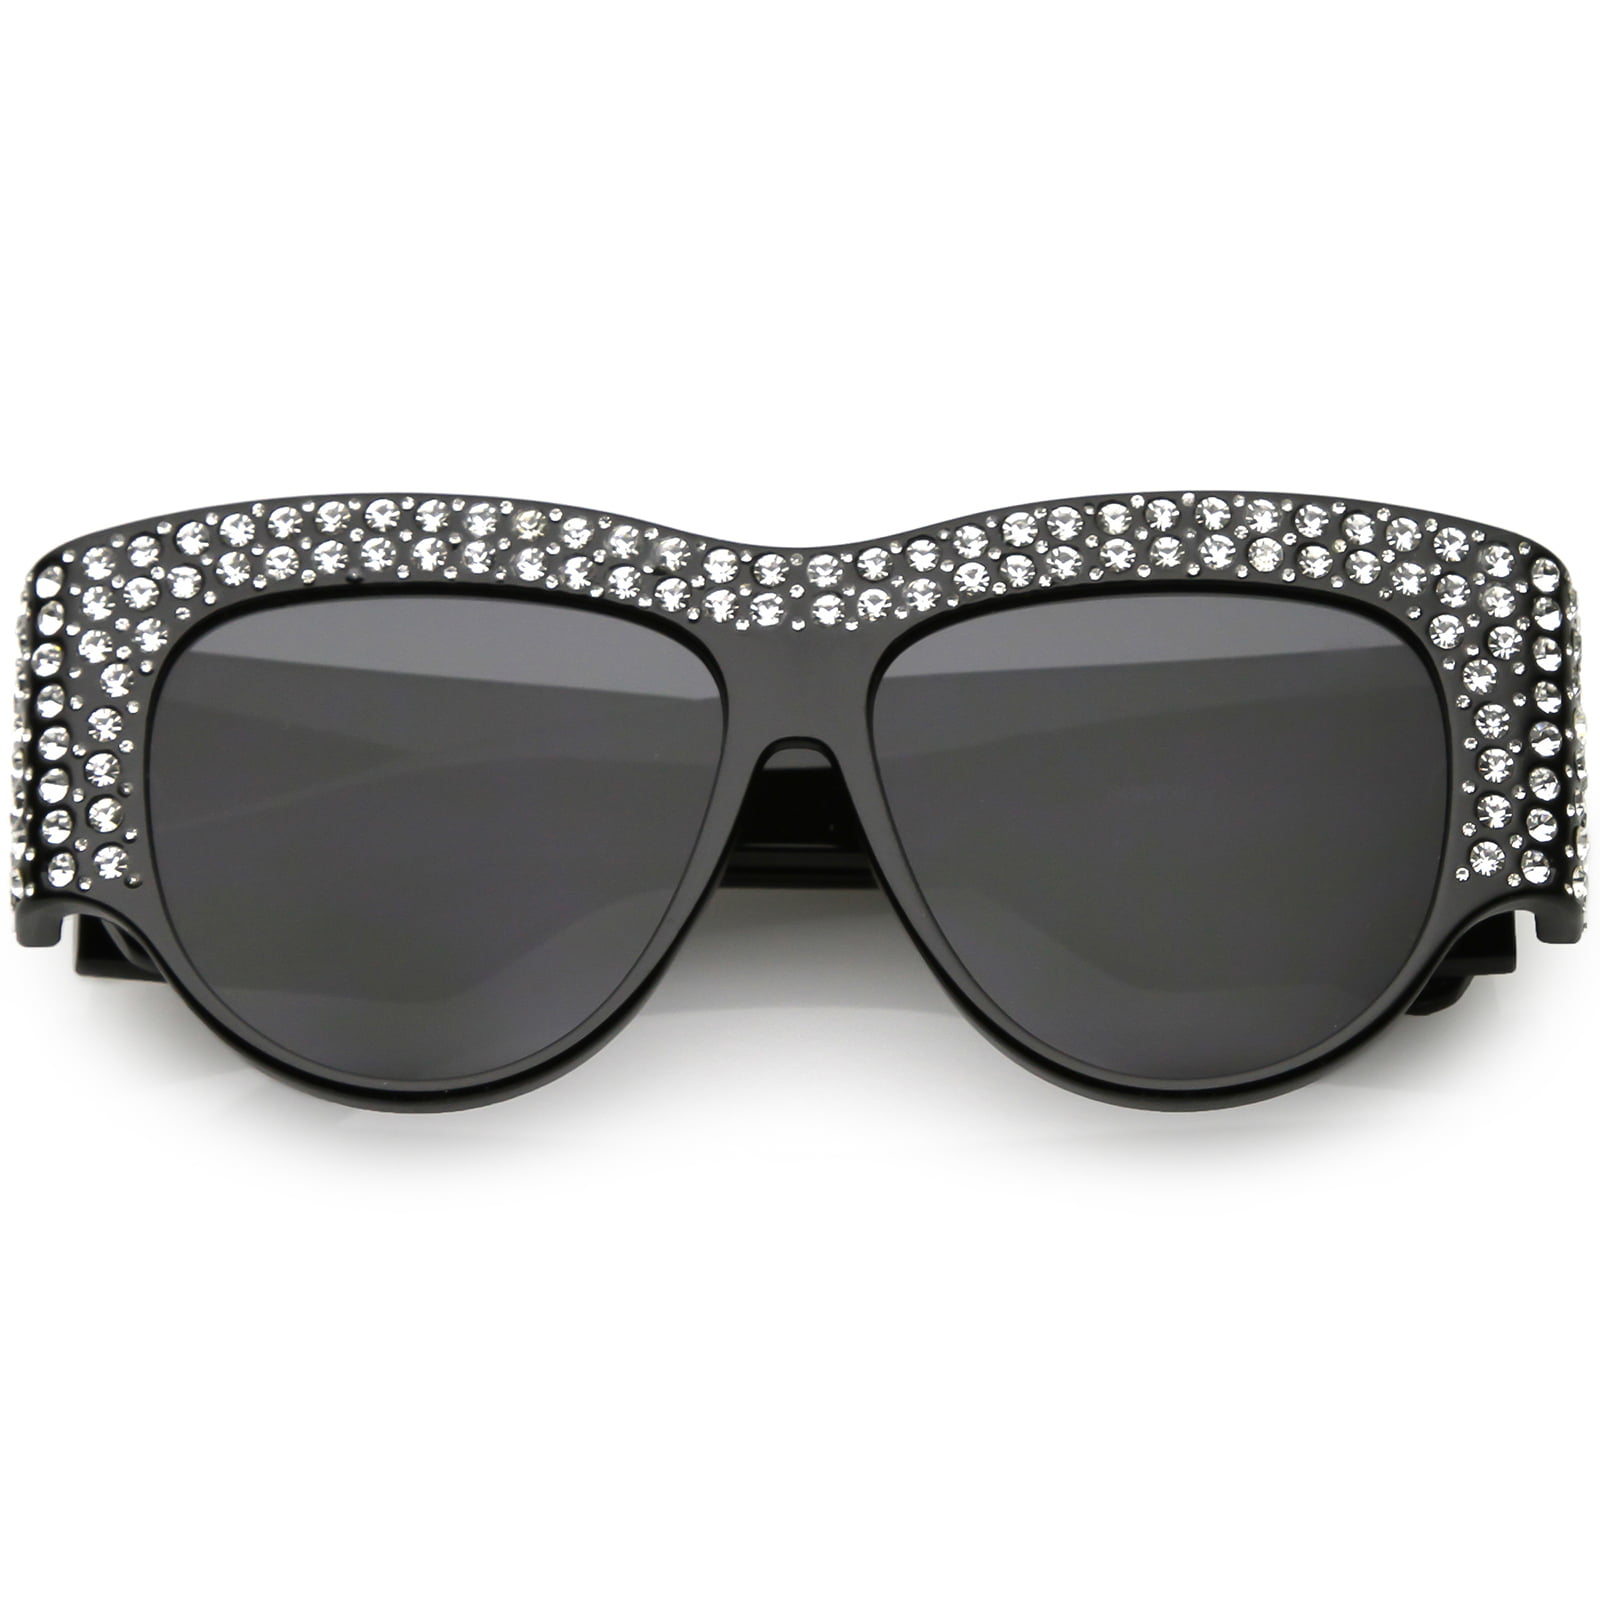 Handcrafted Rhinestone Embellished Oversize Sunglasses Round Flat Lens ...